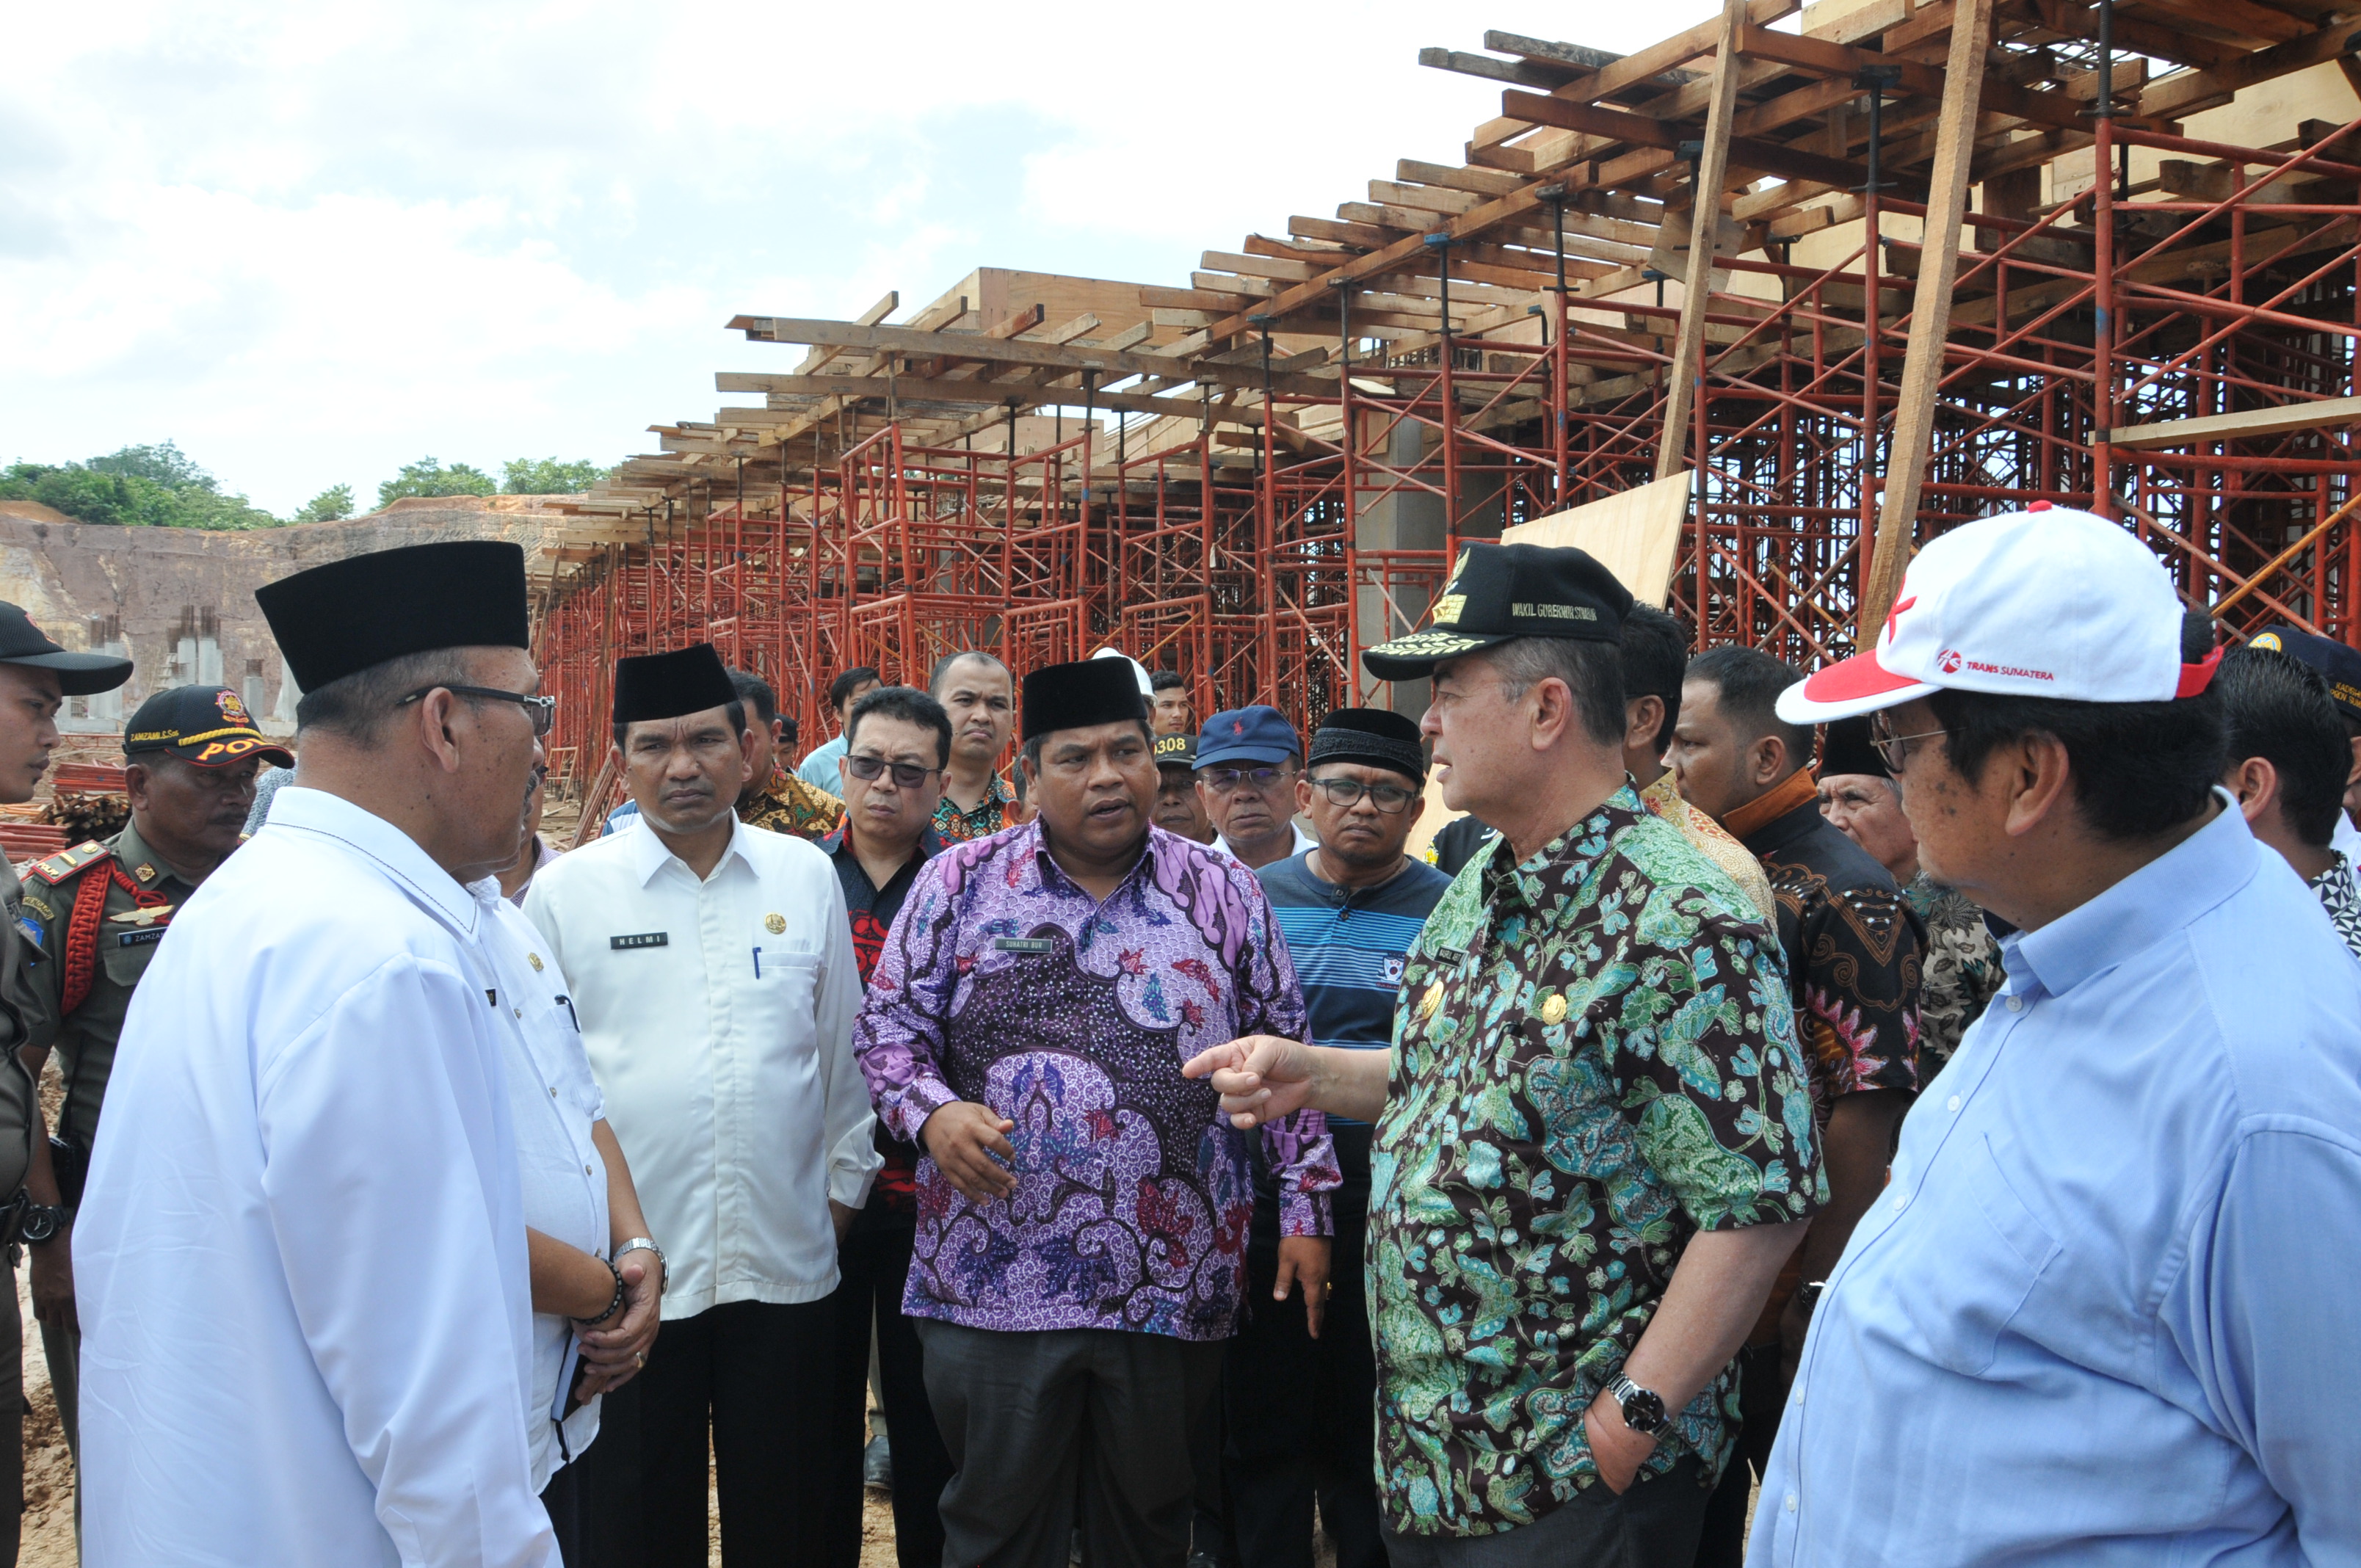 Wakil Gubernur Sumatera Barat, Nasrul Abit meninjau pembangunan stadion utama Sikabu, Padang Pariaman dalam rangka persiapan pembukaan MTQ nasional 2020 di Sumbar.ist